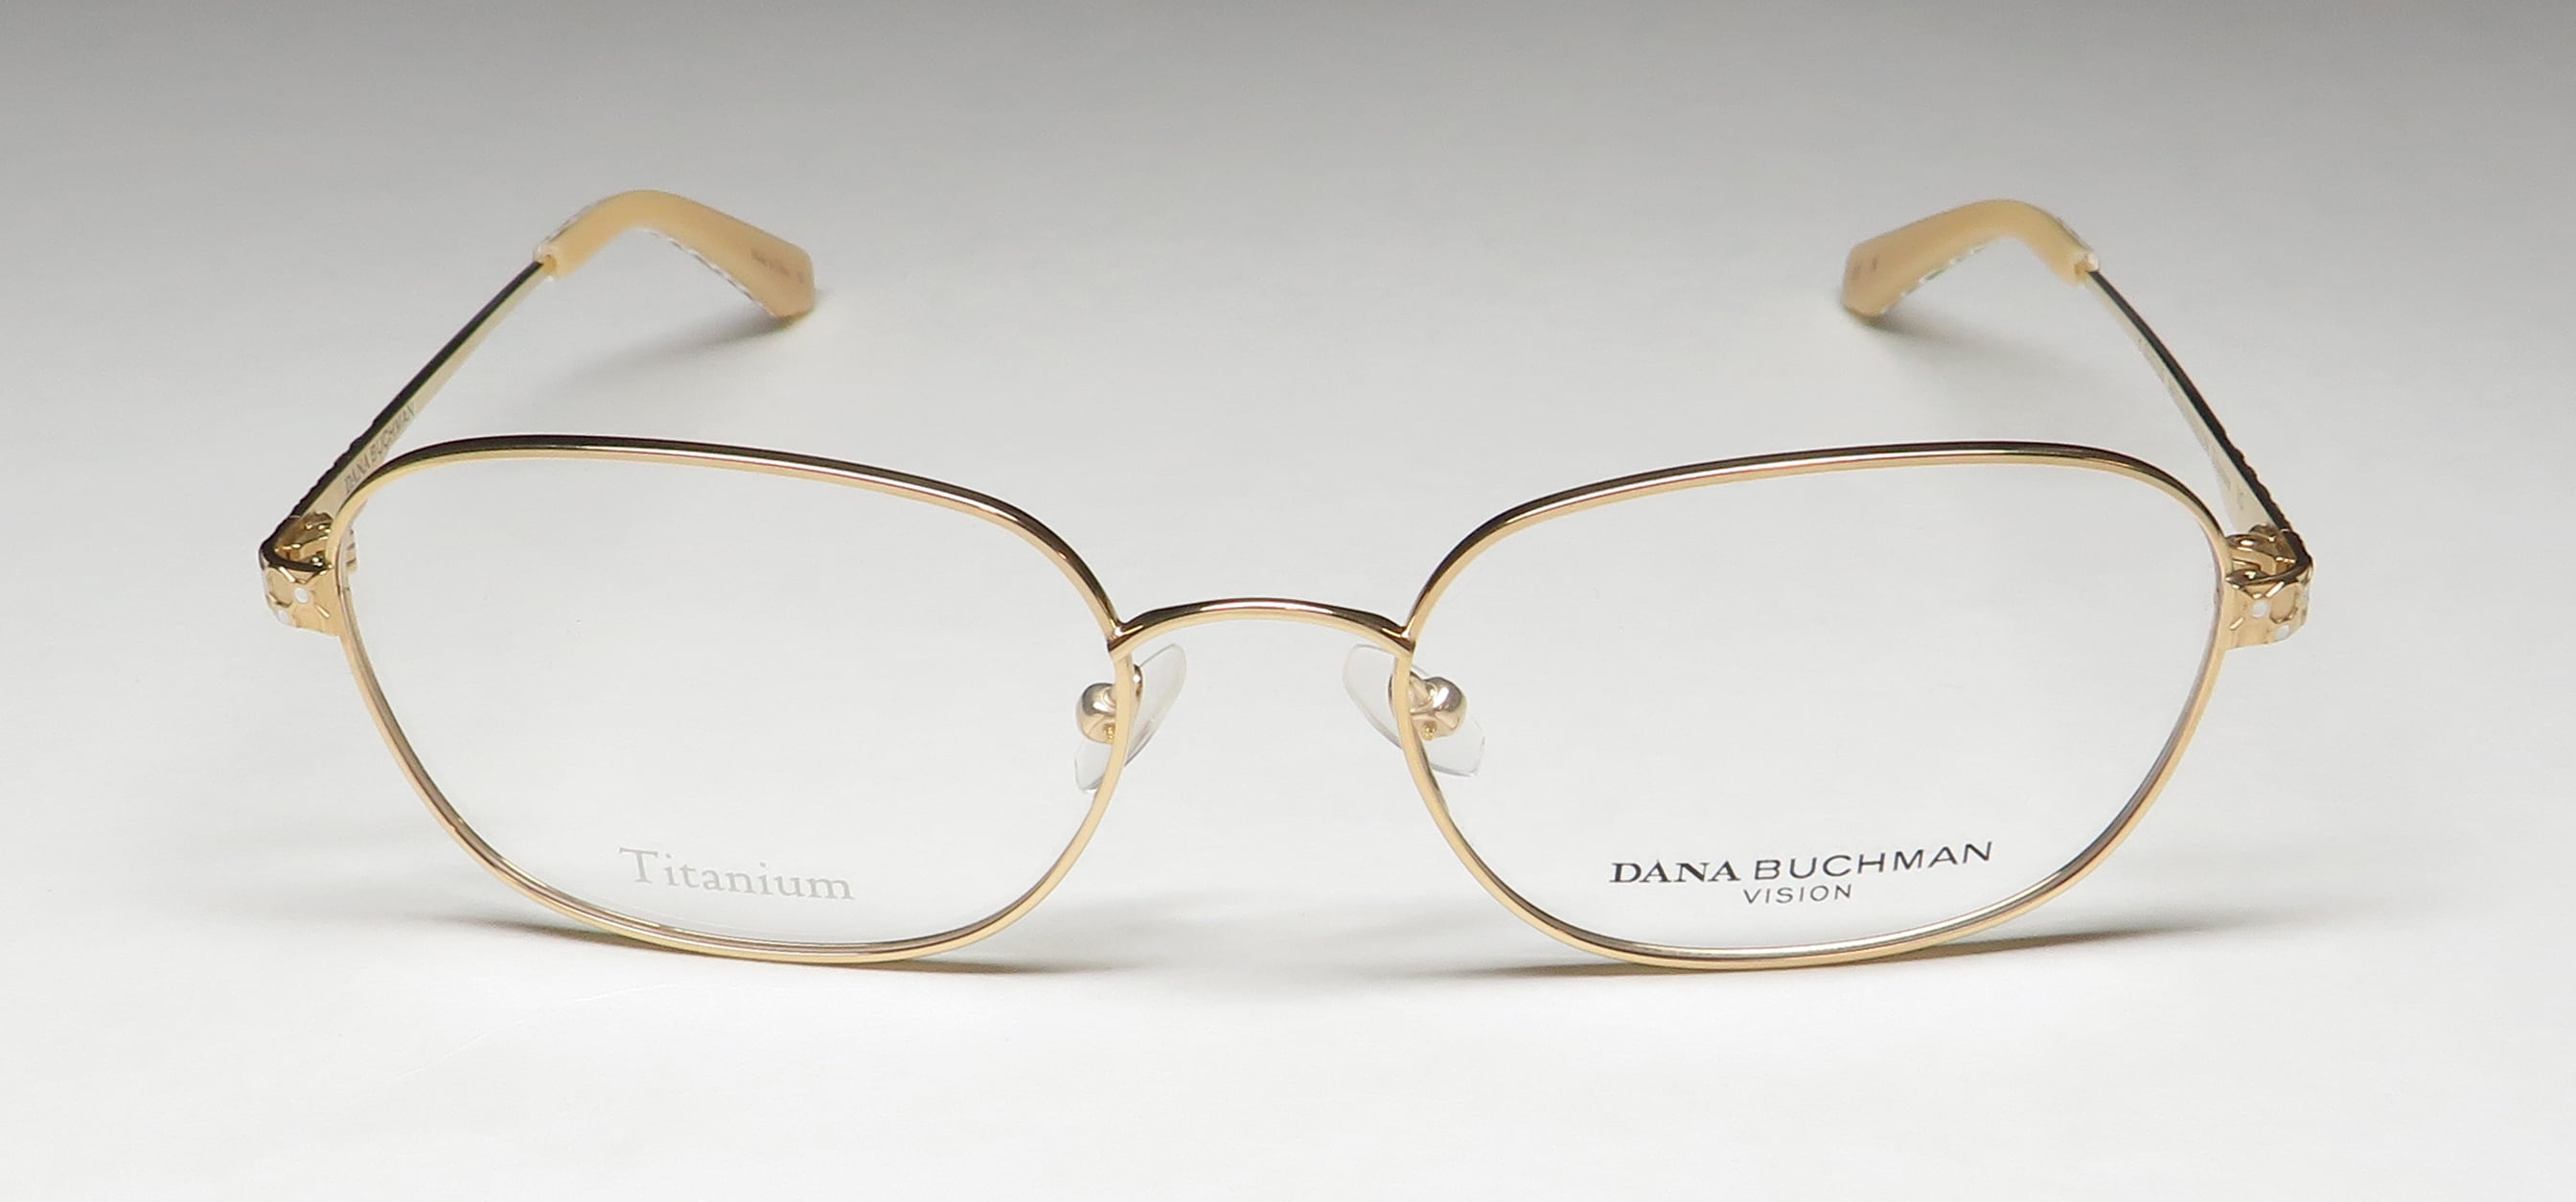 Dana Buchman - Eyeglasses Women Mrs. Gunnerson Silver 55mm